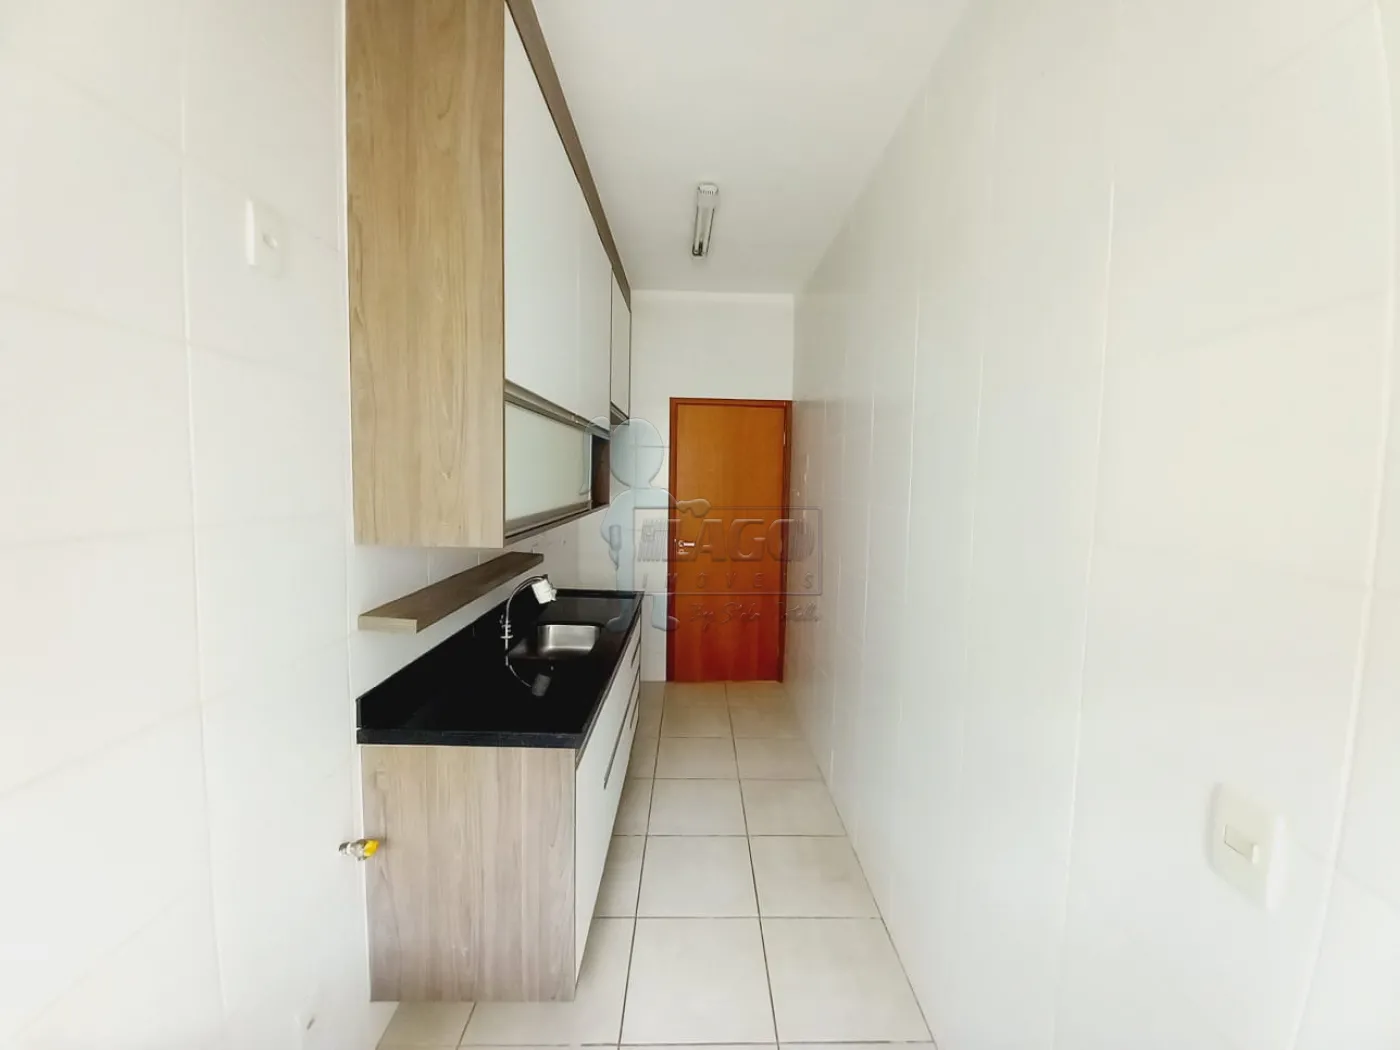 Alugar Apartamentos / Padrão em Ribeirão Preto R$ 1.600,00 - Foto 7